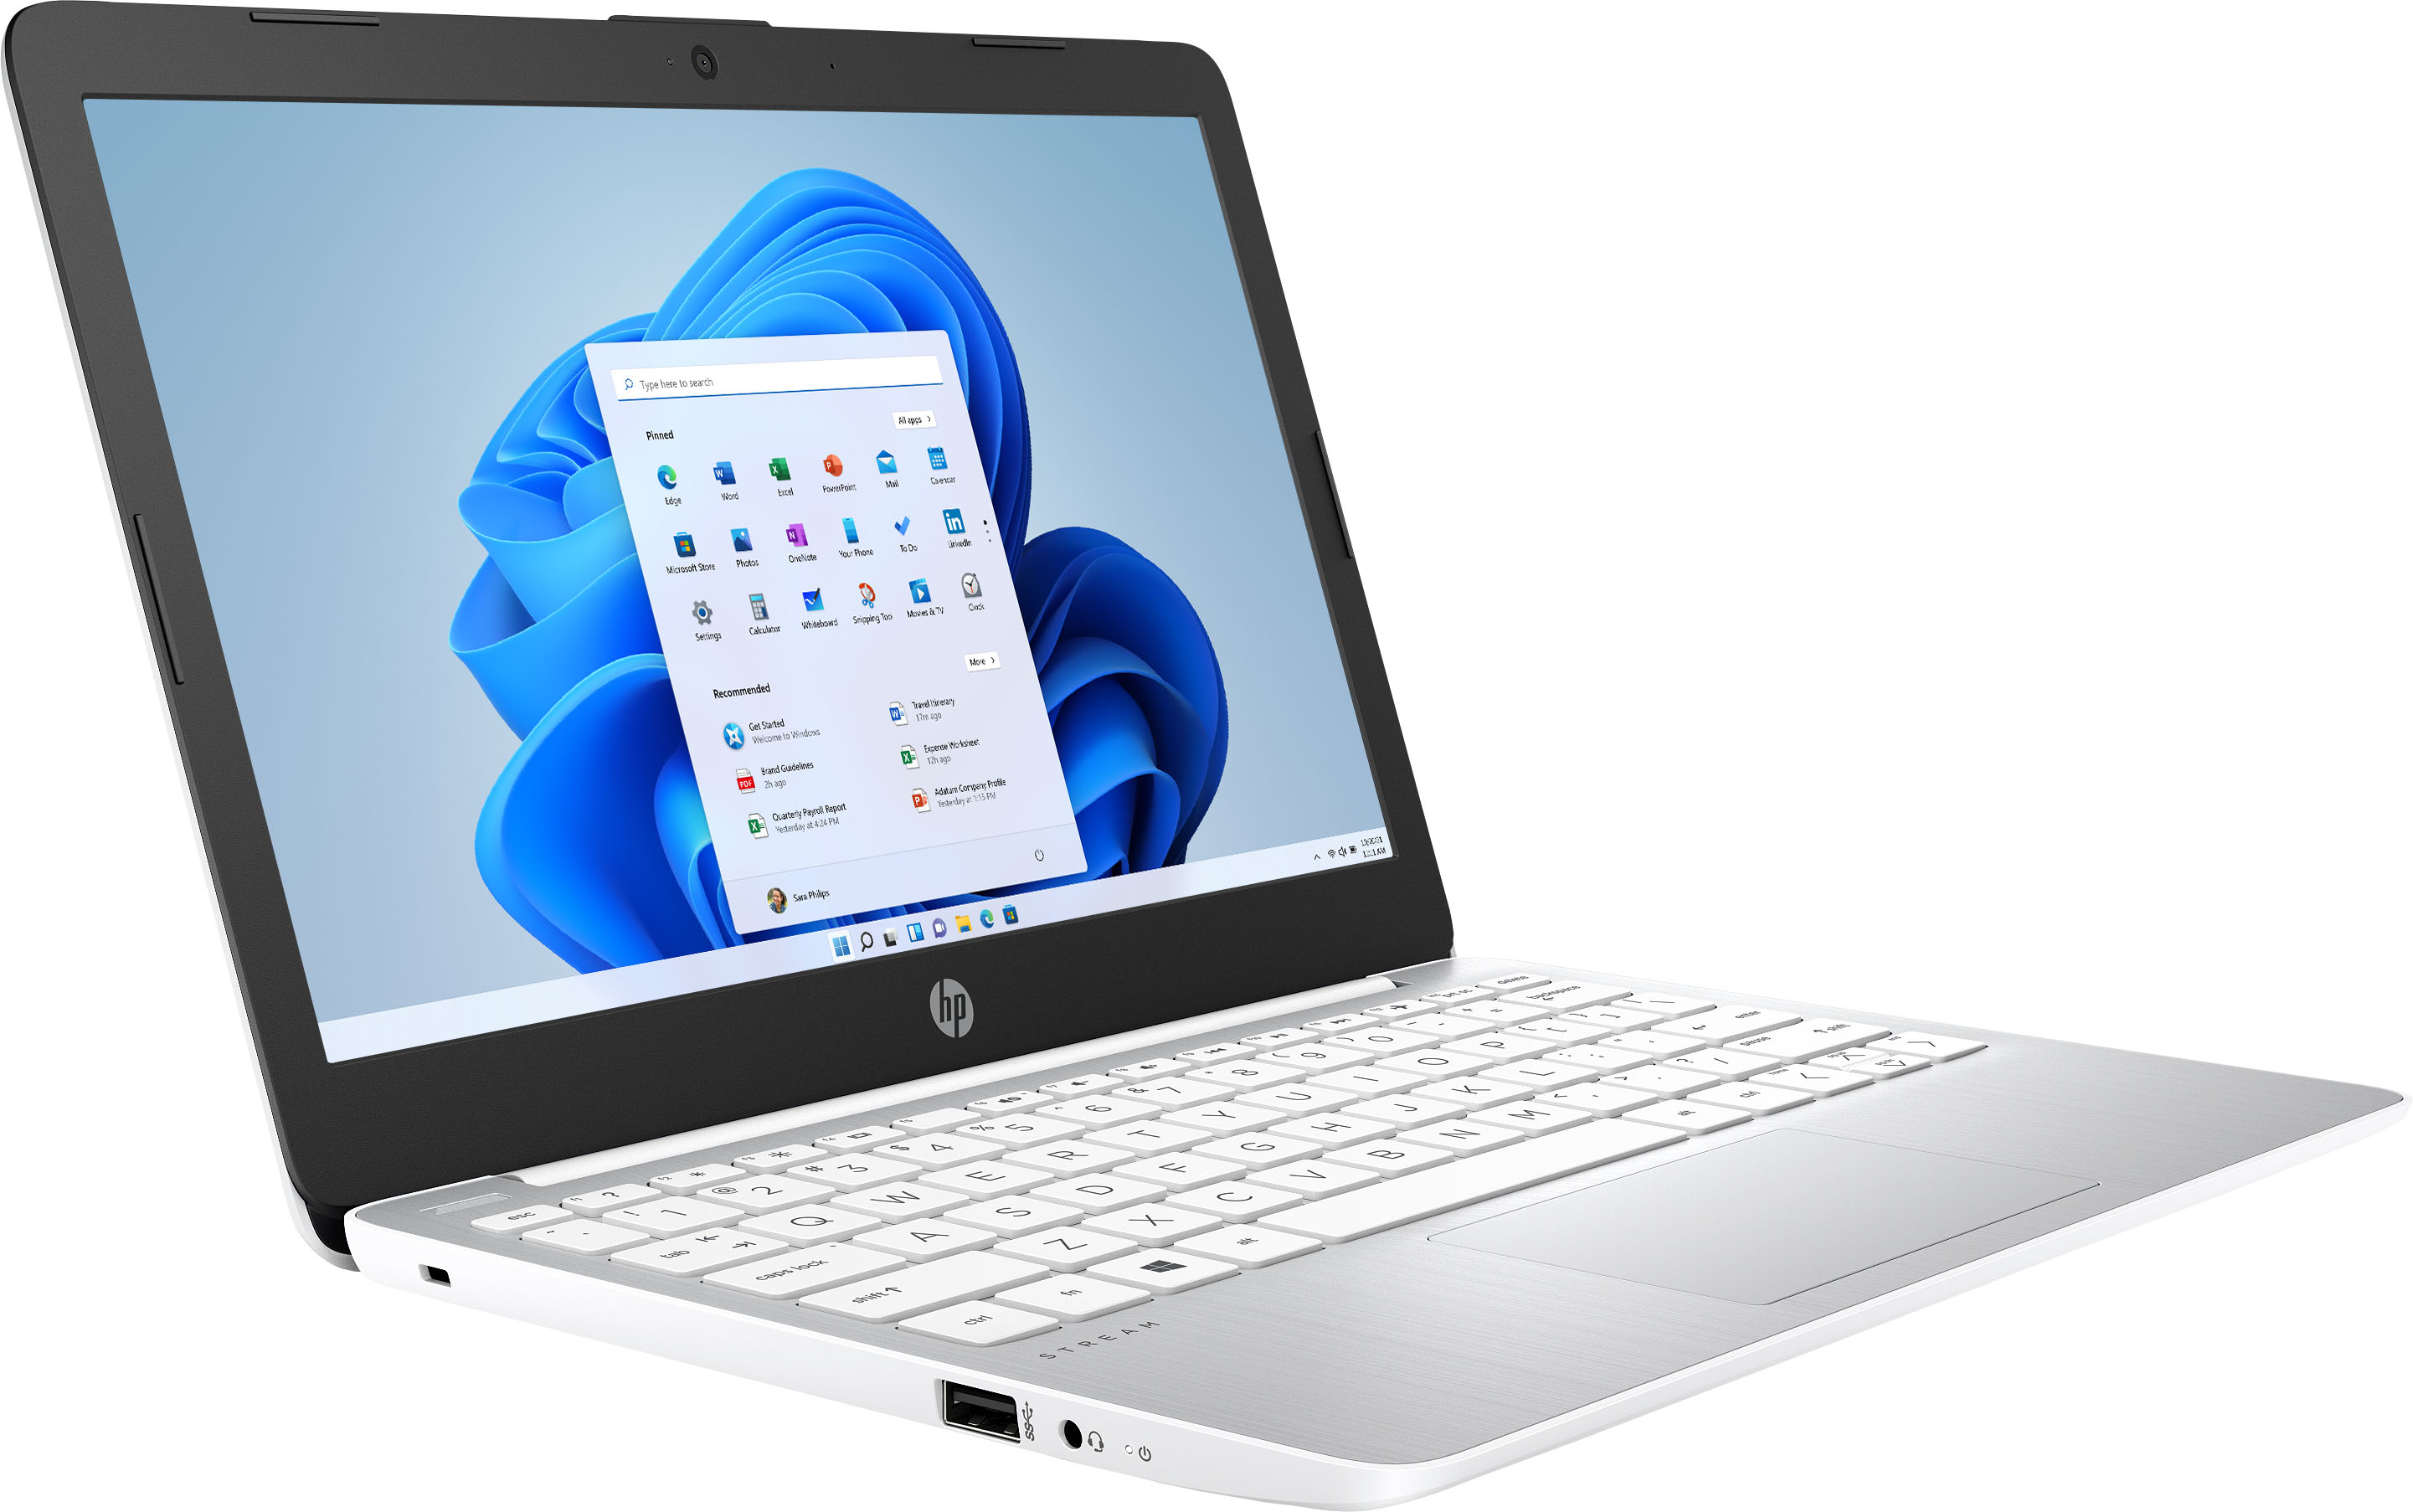 Angle View: HP - Stream 11.6" Laptop - Intel Celeron - 4GB Memory - 64GB eMMC Flash Memory - Diamond White